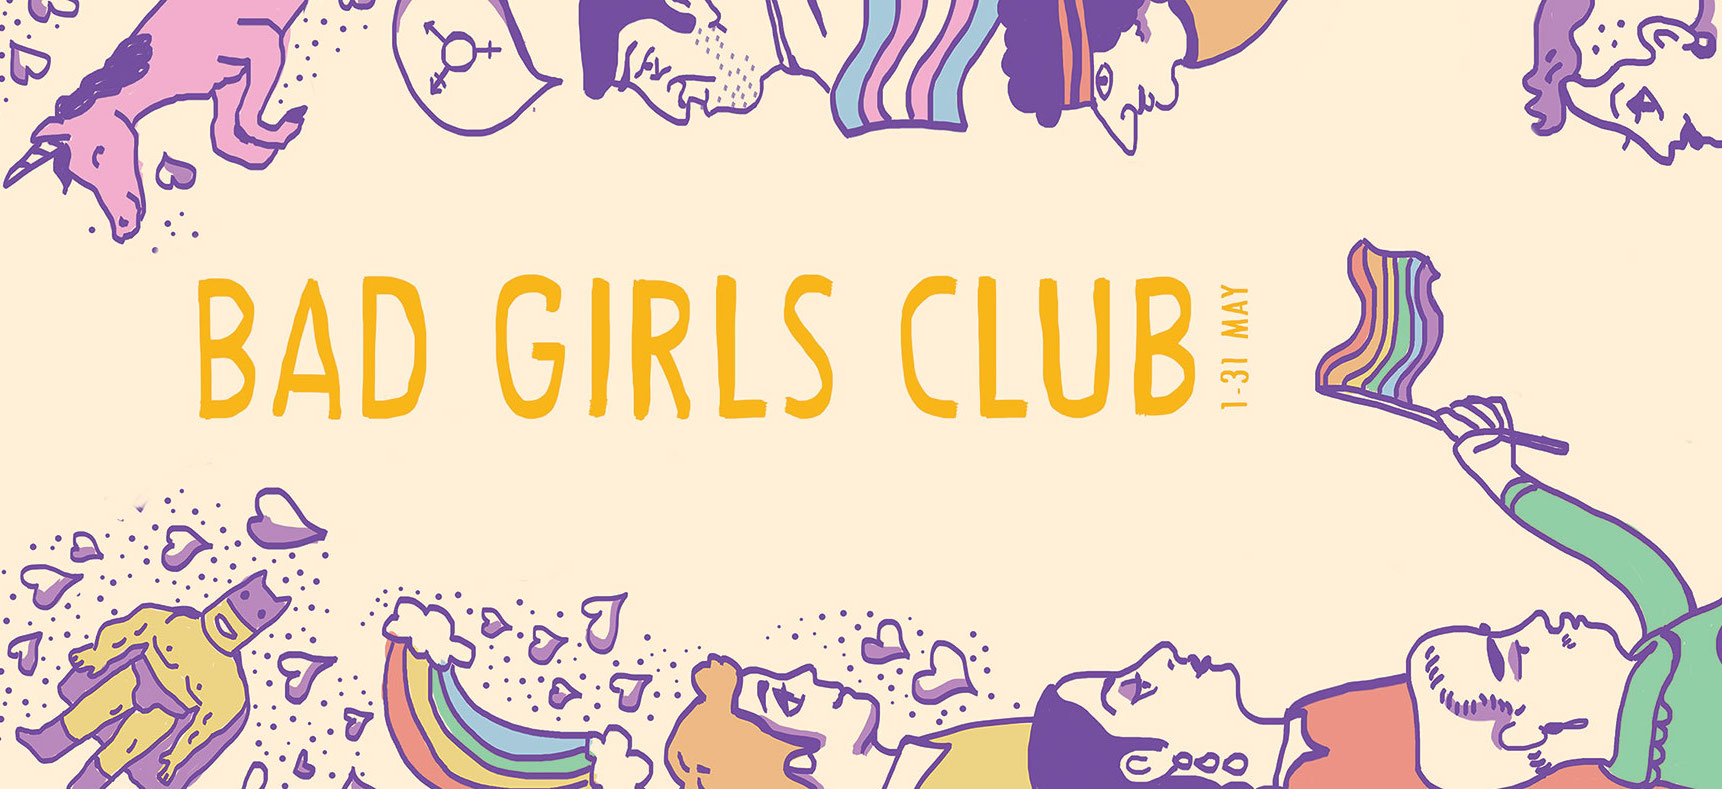 Bad Girls Club: Artist Bhenji Ra curates queer arts program for western Sydney